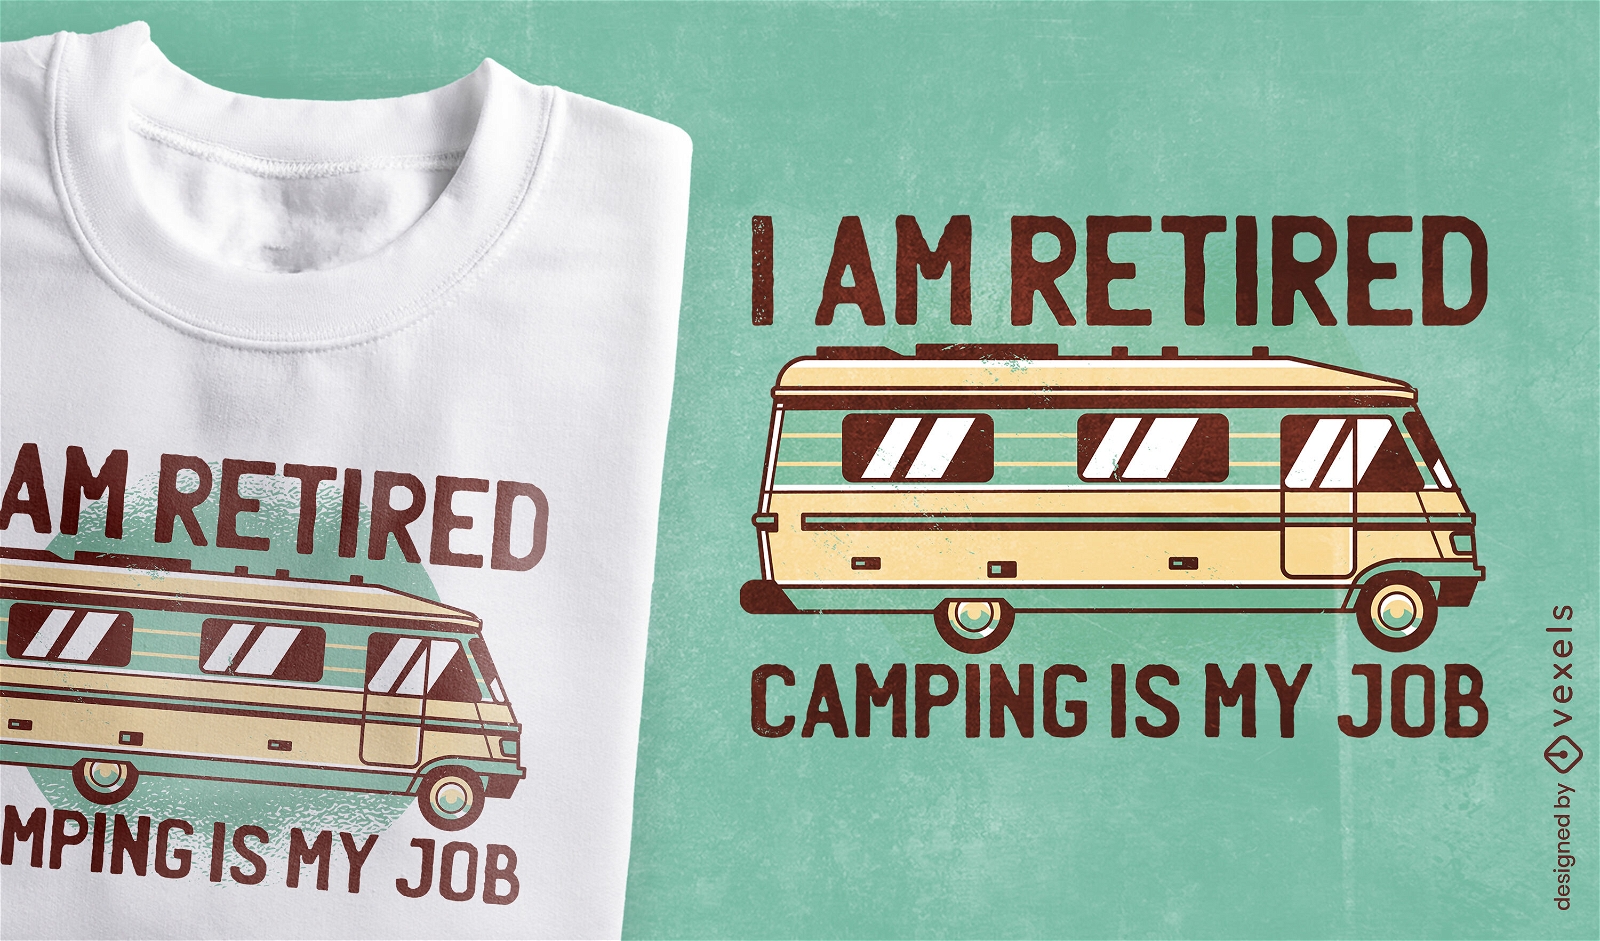 Camping caravan retired t-shirt design